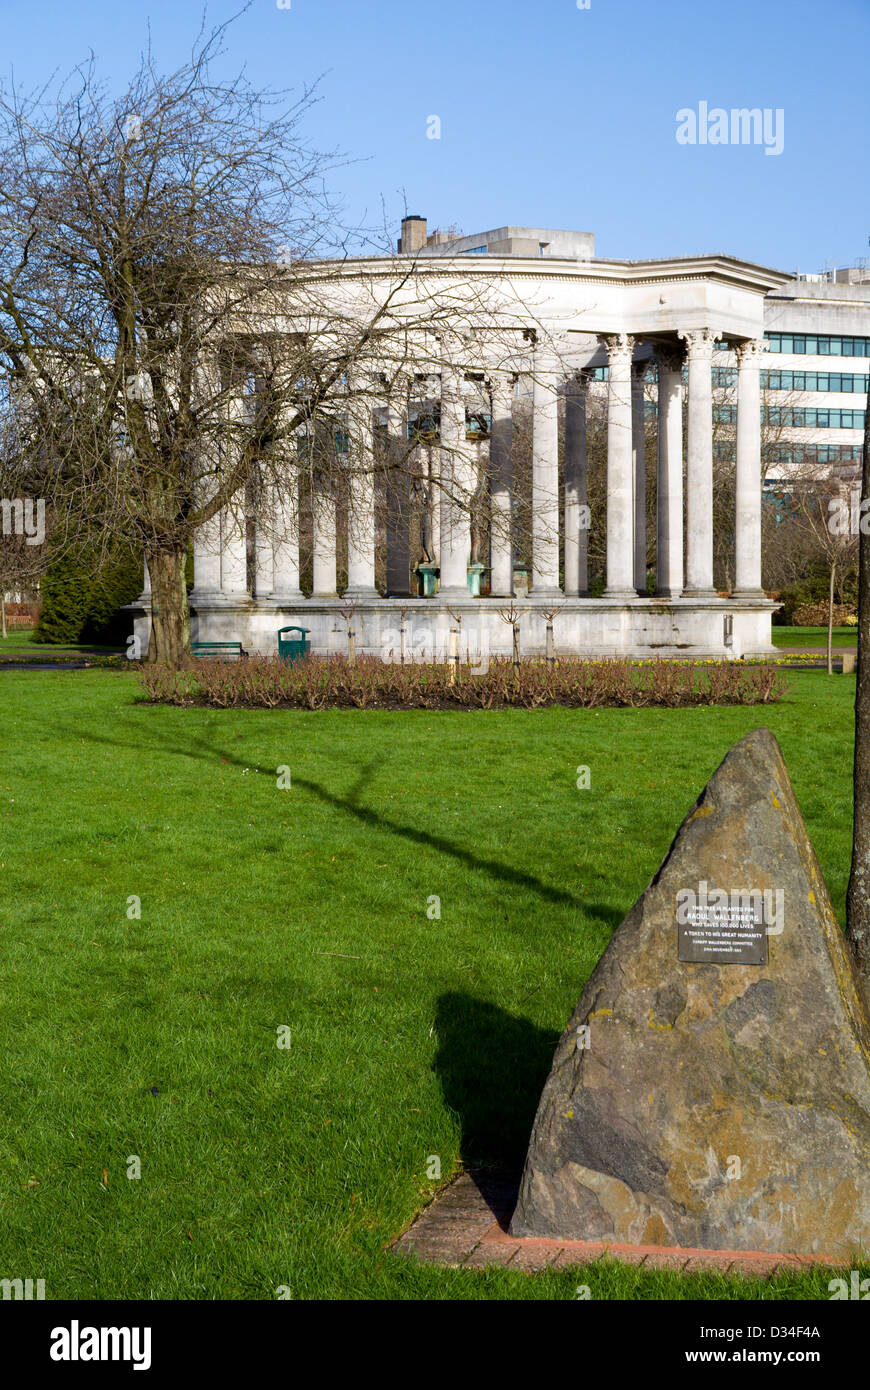 Pierre commémorative Raoul Wallenberg et le Pays de Galles National War Memorial, Alexandra Gardens Cathays Park, Cardiff, Pays de Galles, Royaume-Uni. Banque D'Images